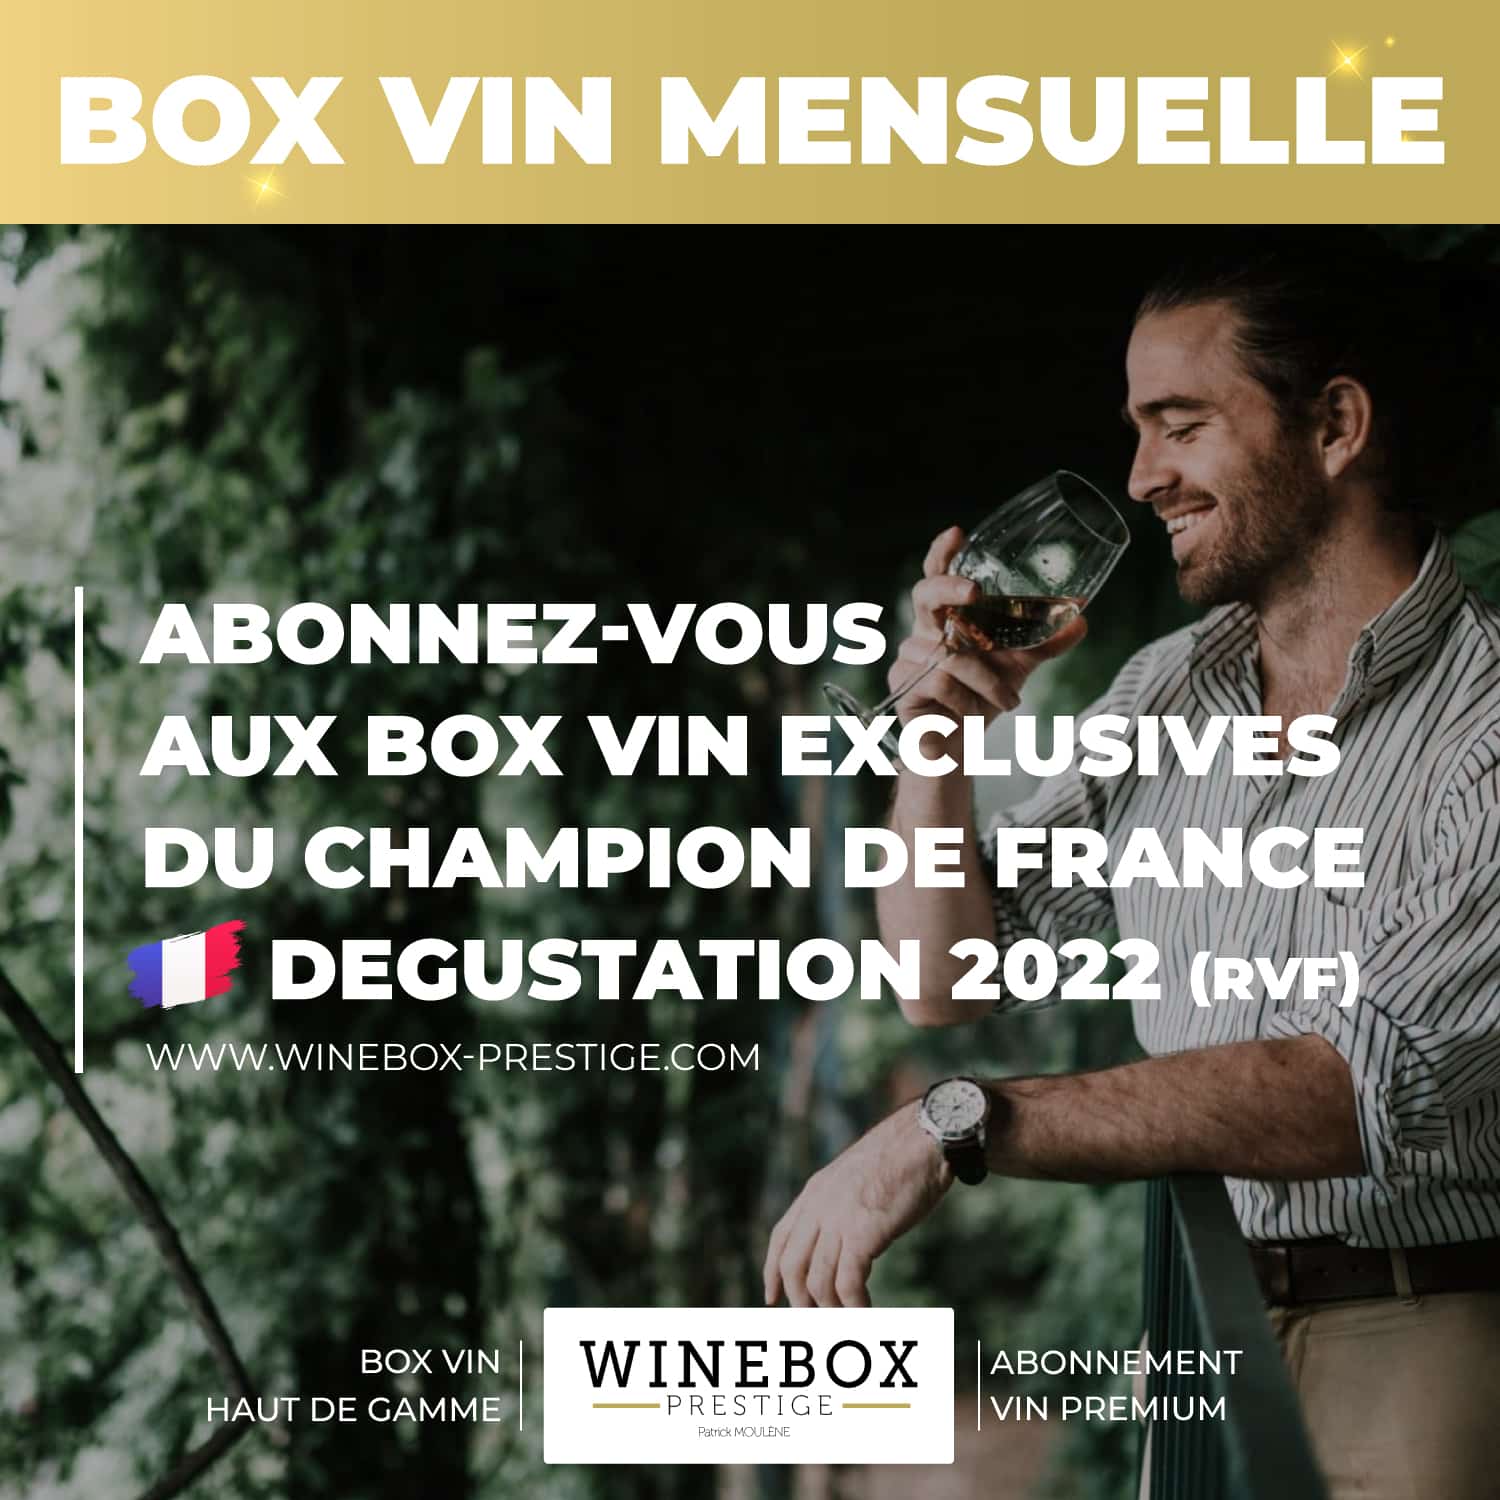 box vin mensuelle abonnement winebox prestige